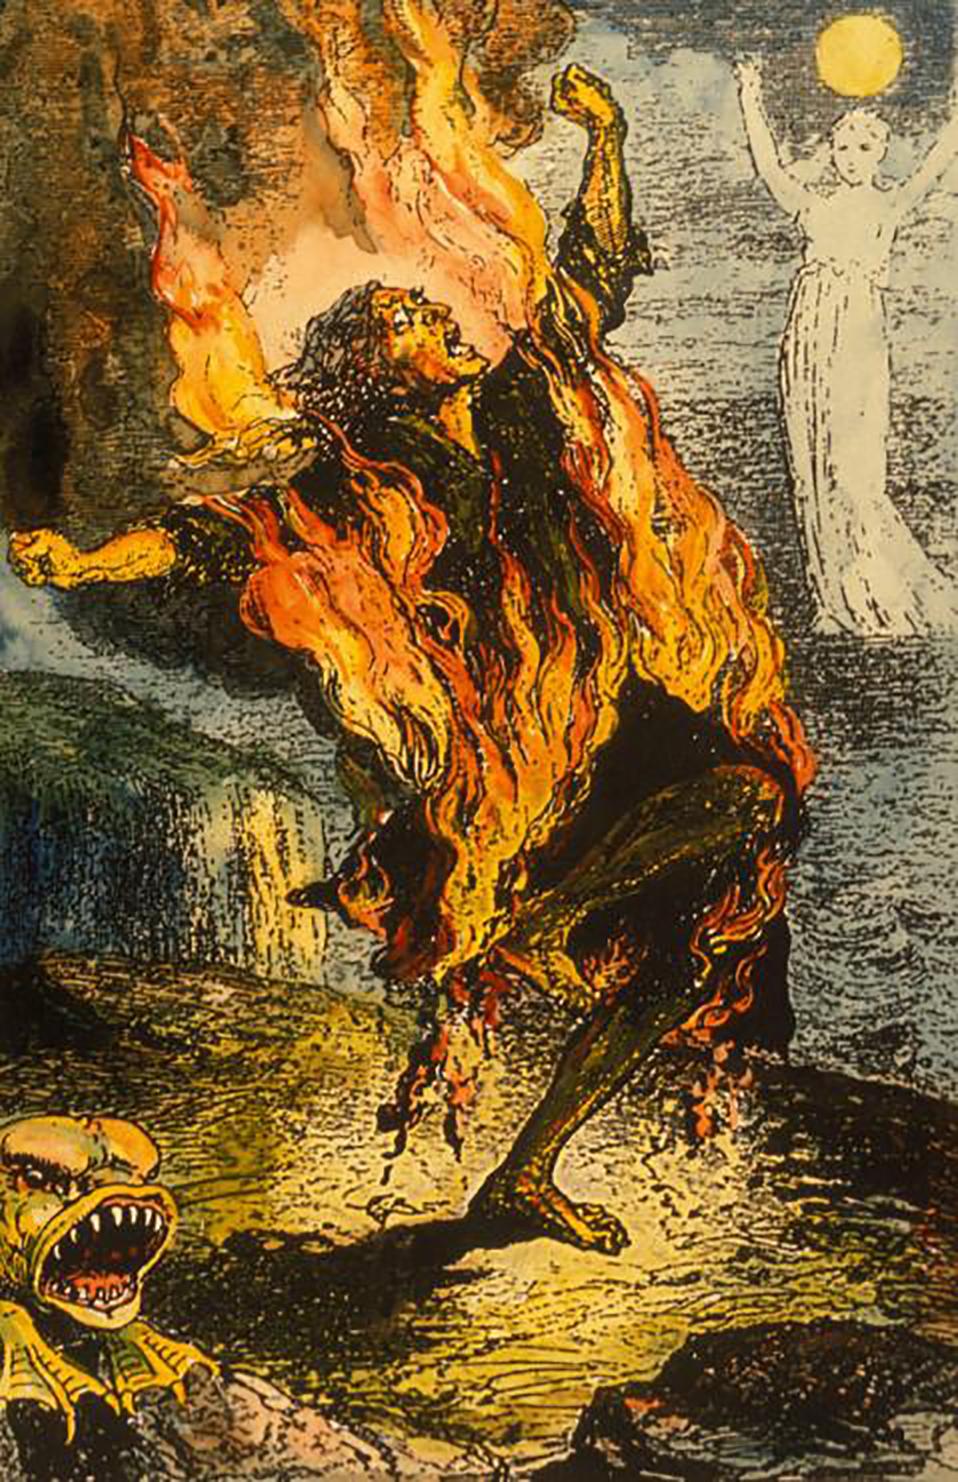 Myten om mennesker, der pludselig bryder i brand, har også appelleret til kunstneres fantasi. Fransk bogillustration fra 1885.